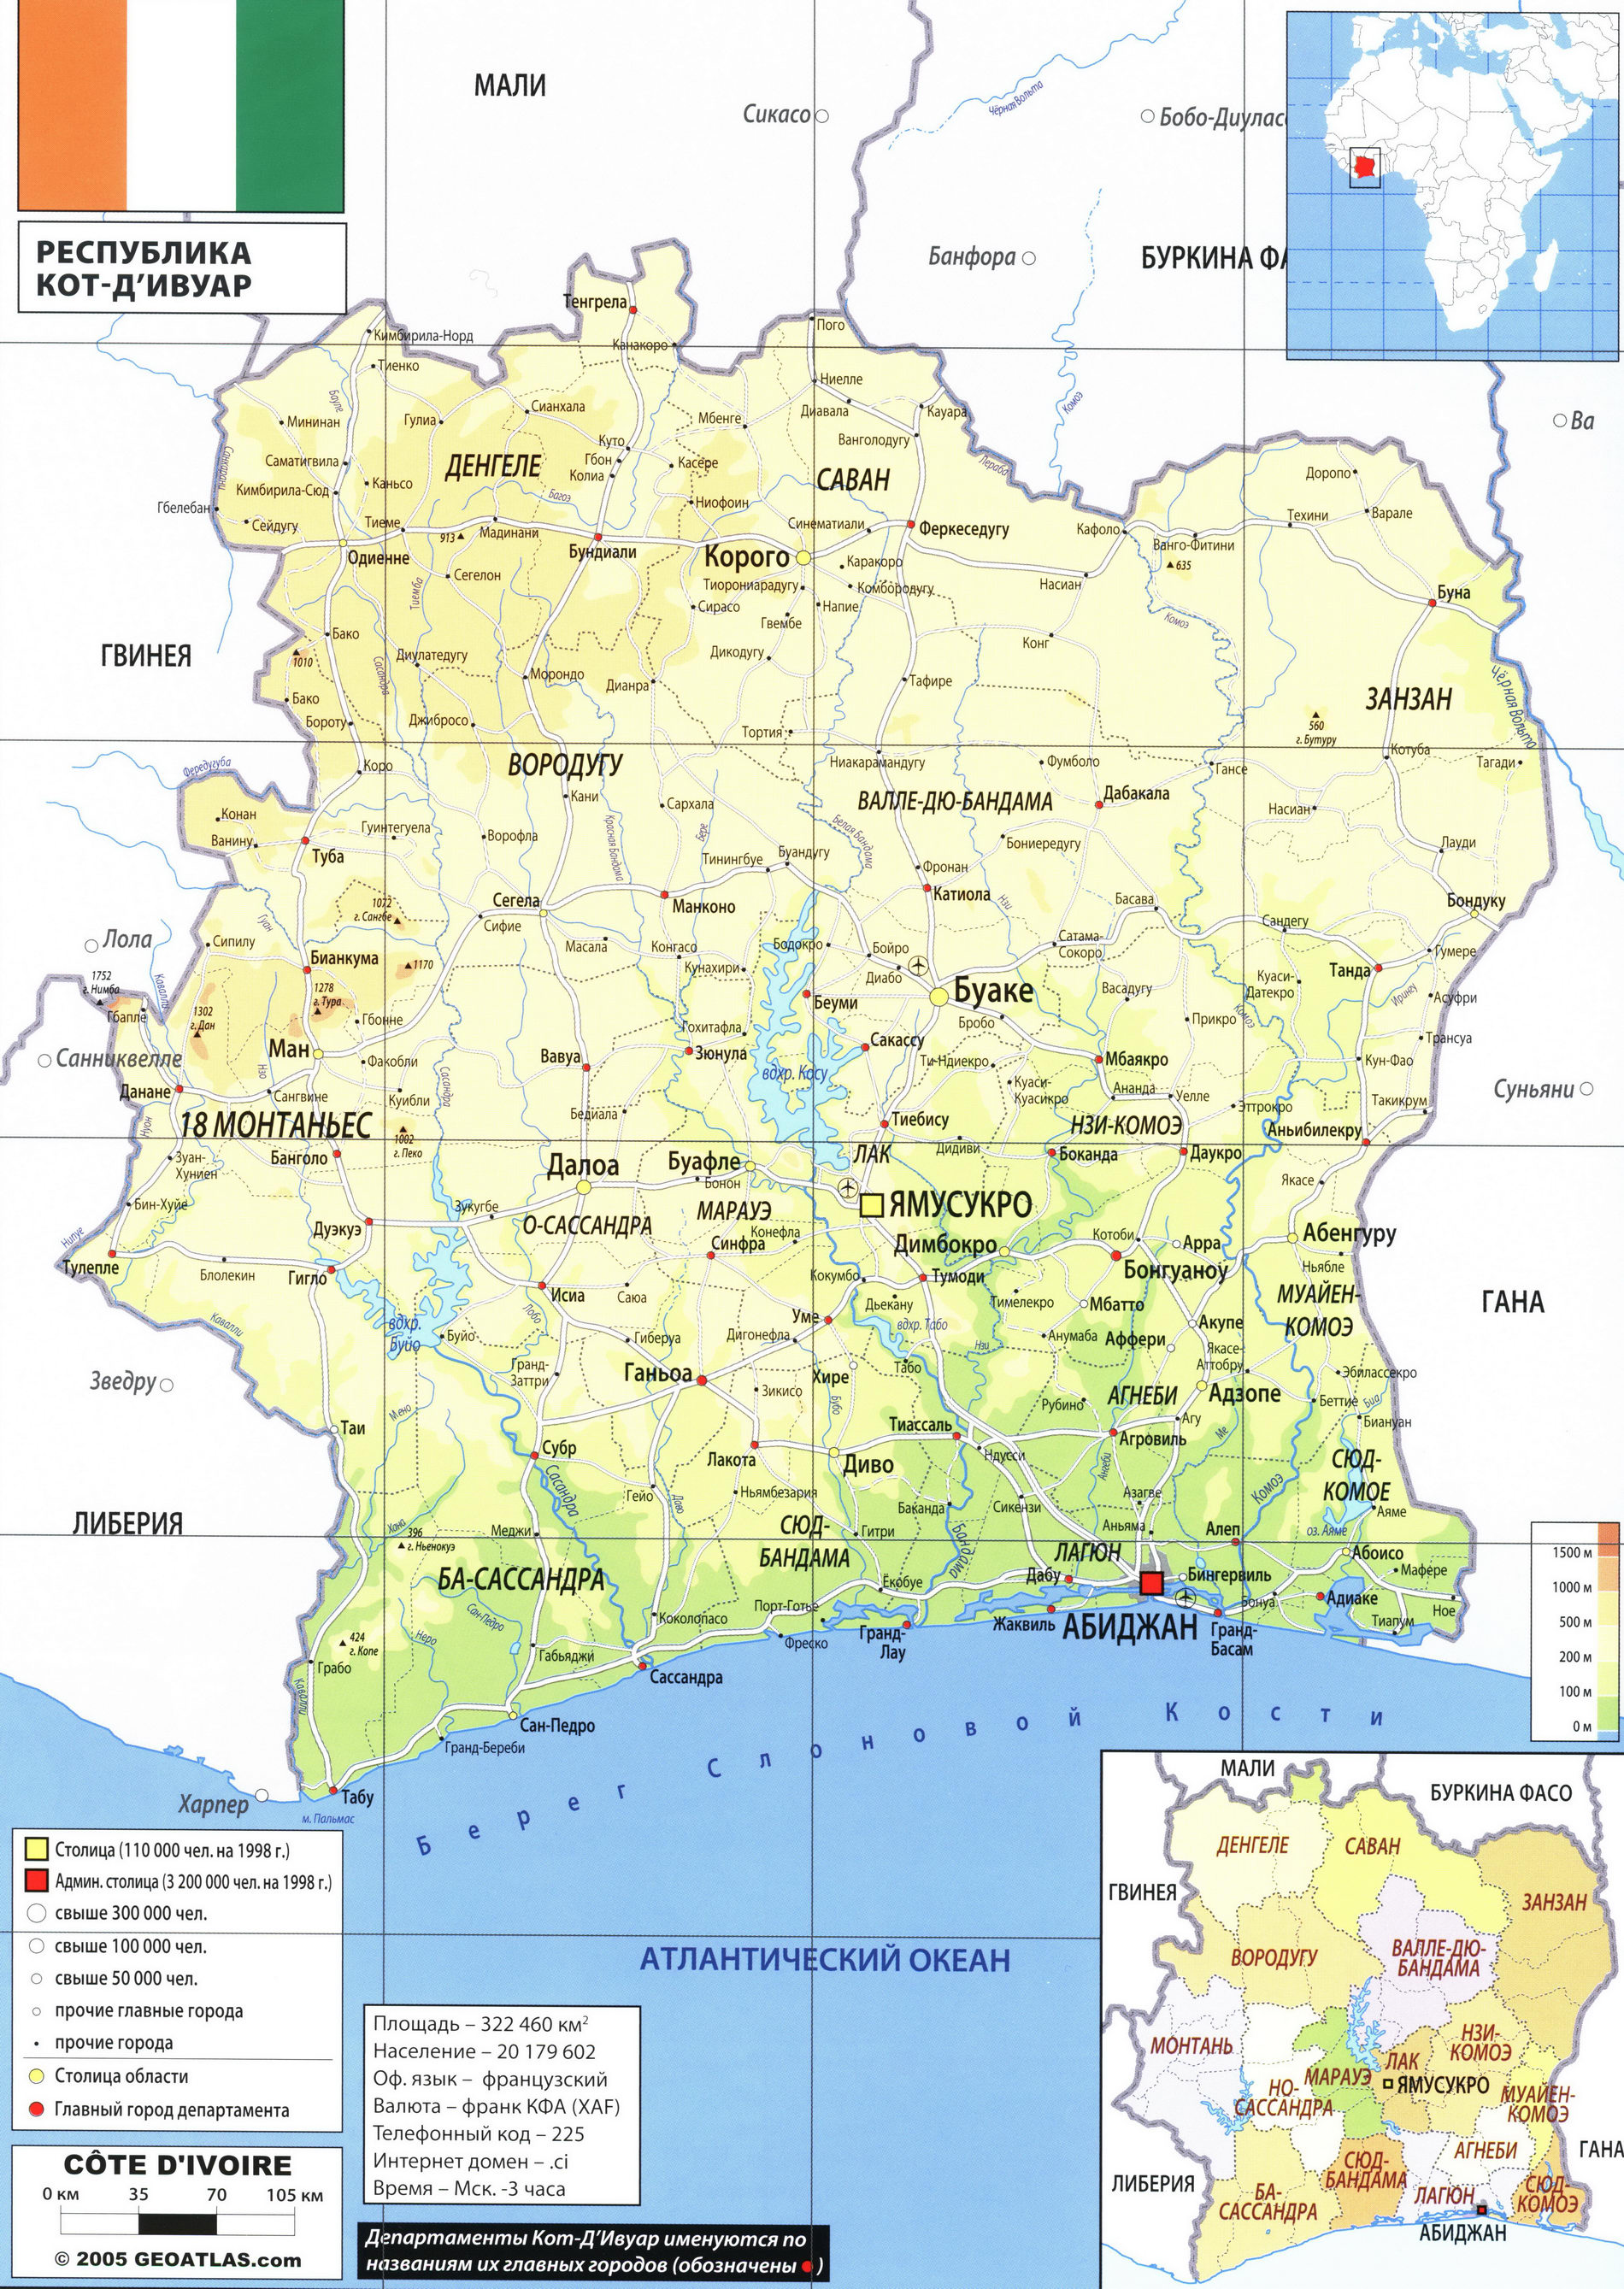 Кот-д Ивуар карта на русском языке